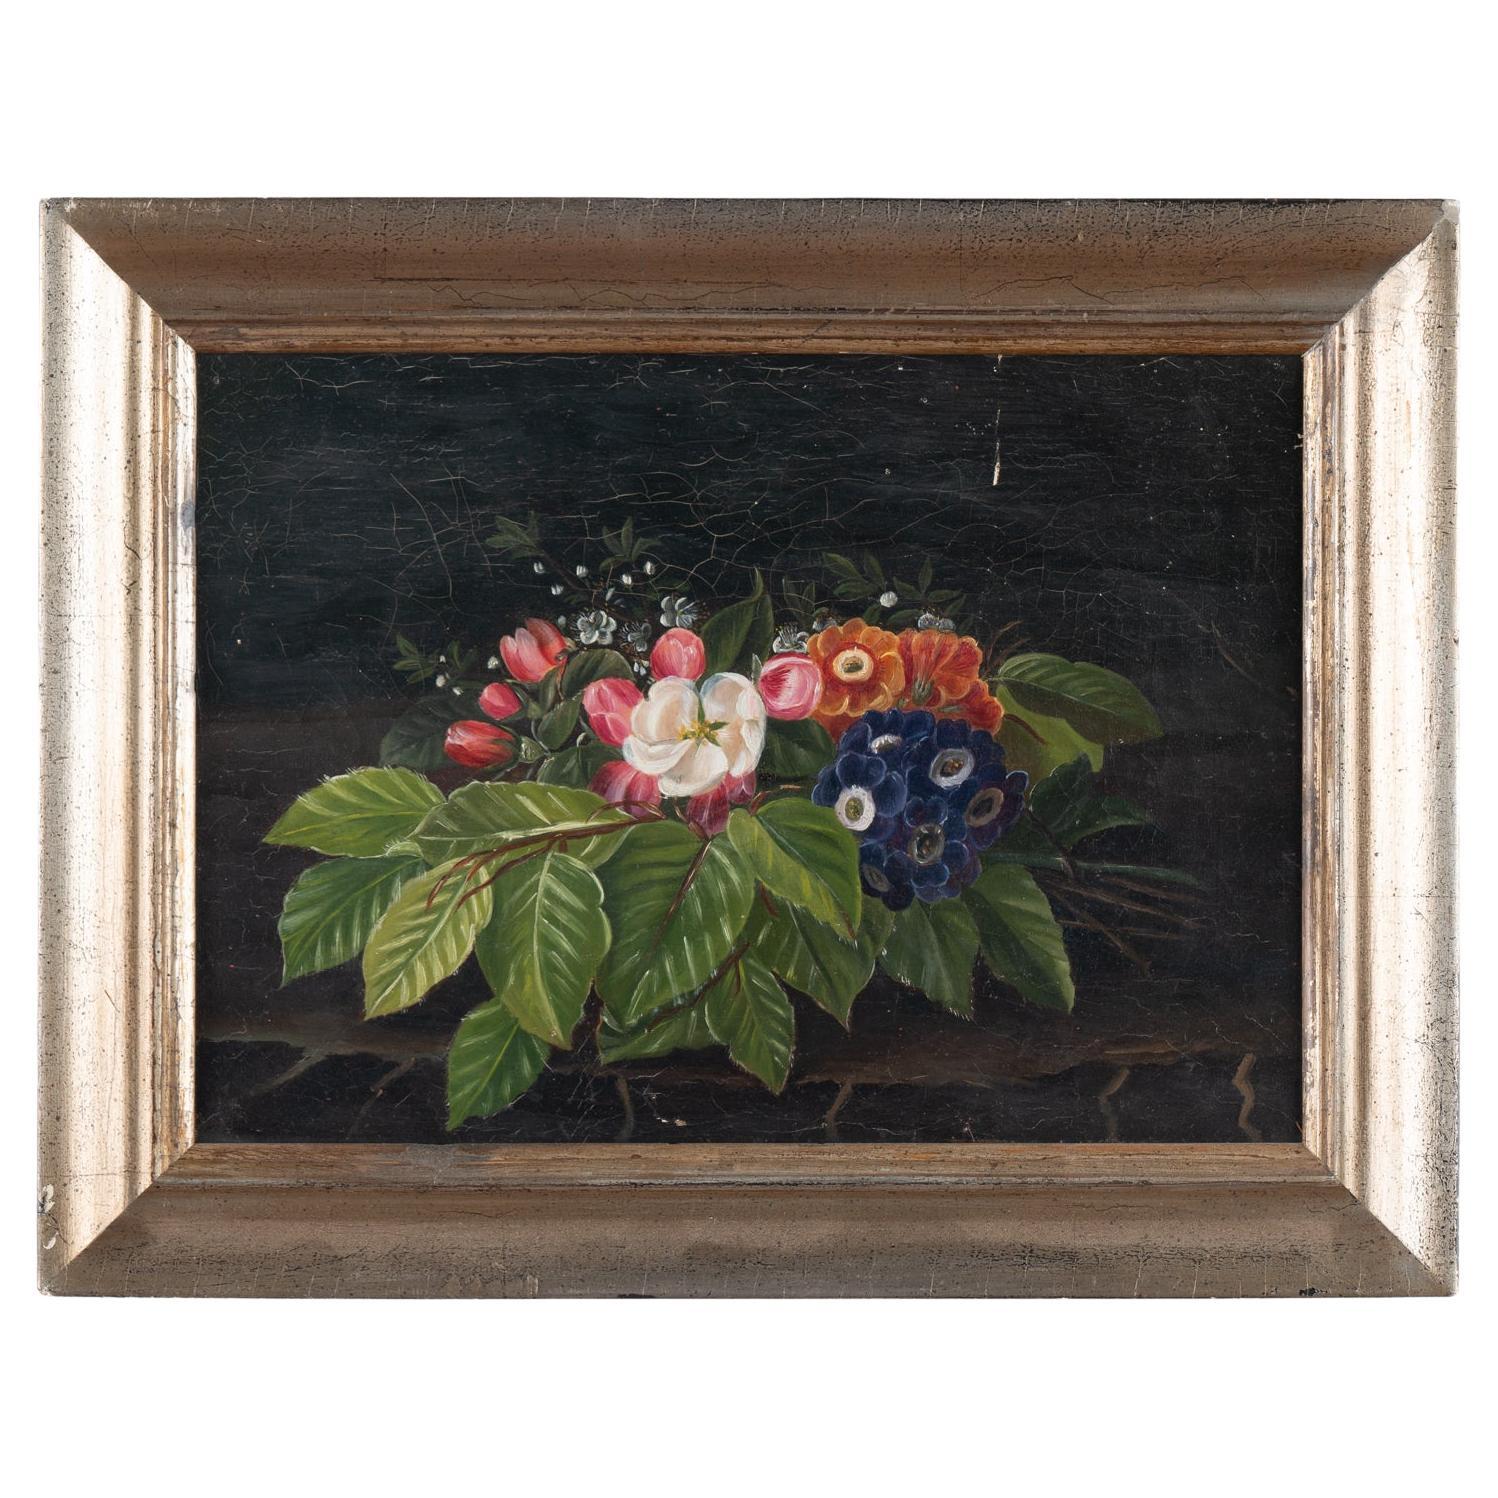 Original Öl auf Leinwand Stilleben mit Blumen, Dänemark um 1860-80